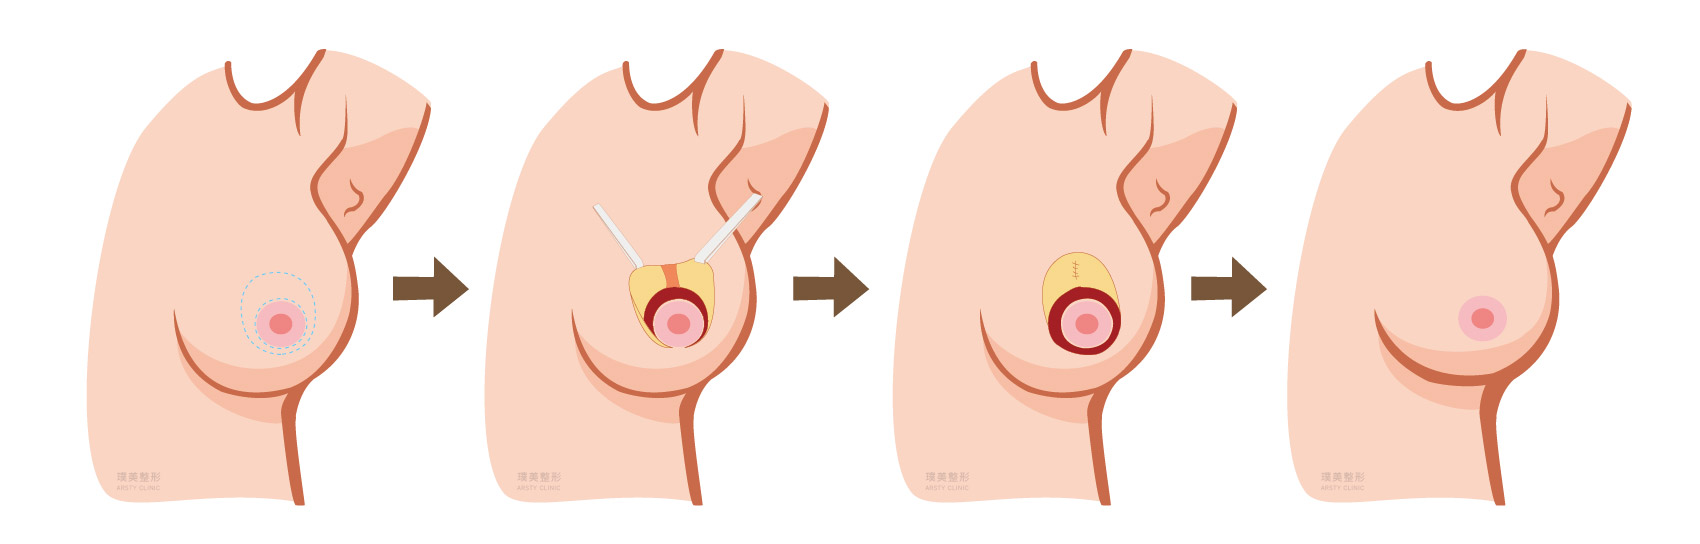 縮胸手術原理 圓形切口提乳法